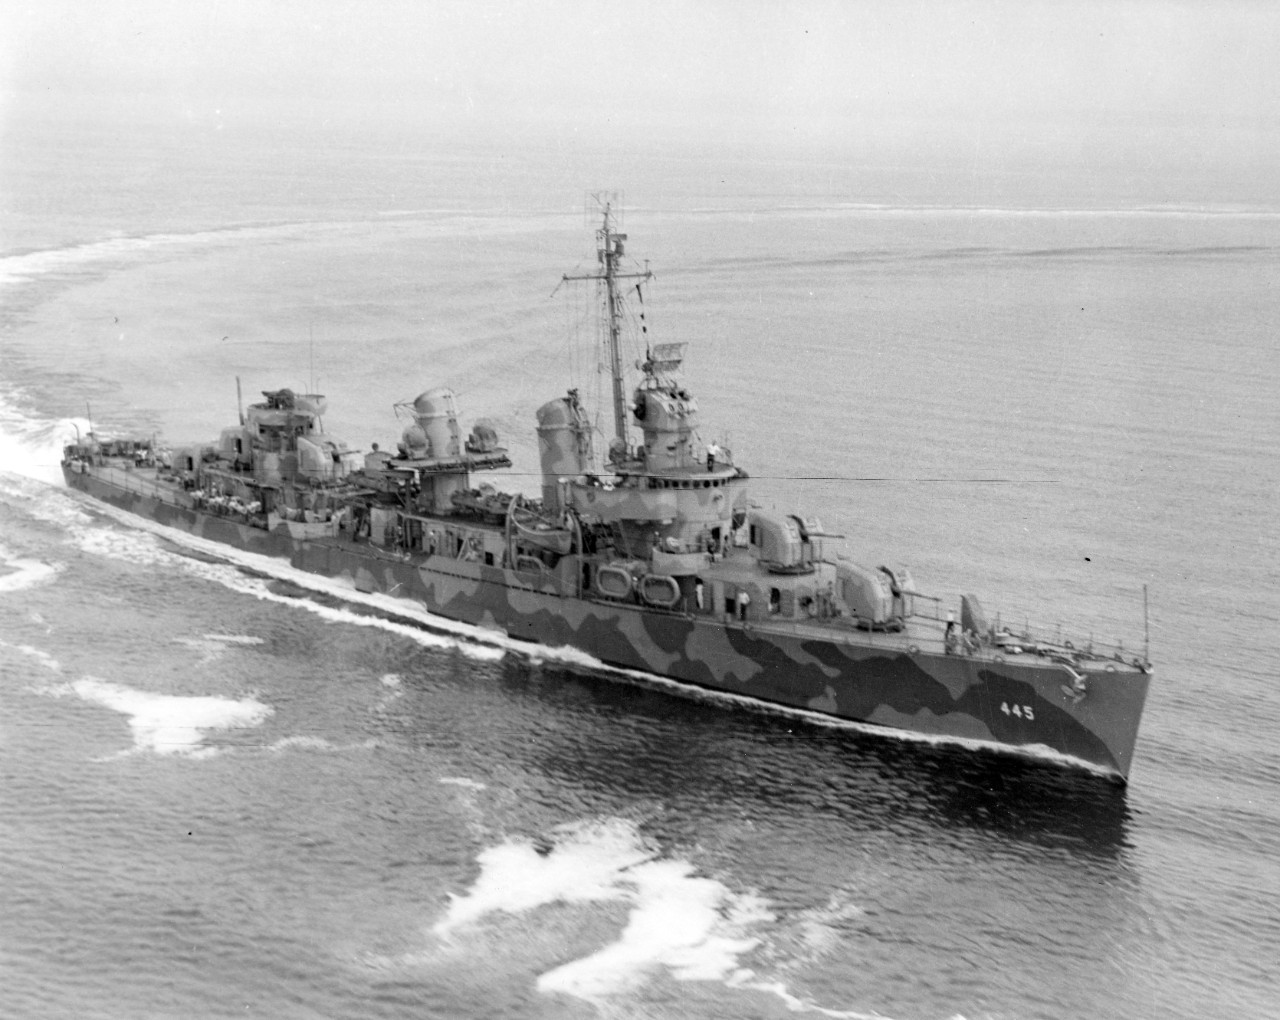 Photo #: 19-N-31243  USS Fletcher (DD-445)